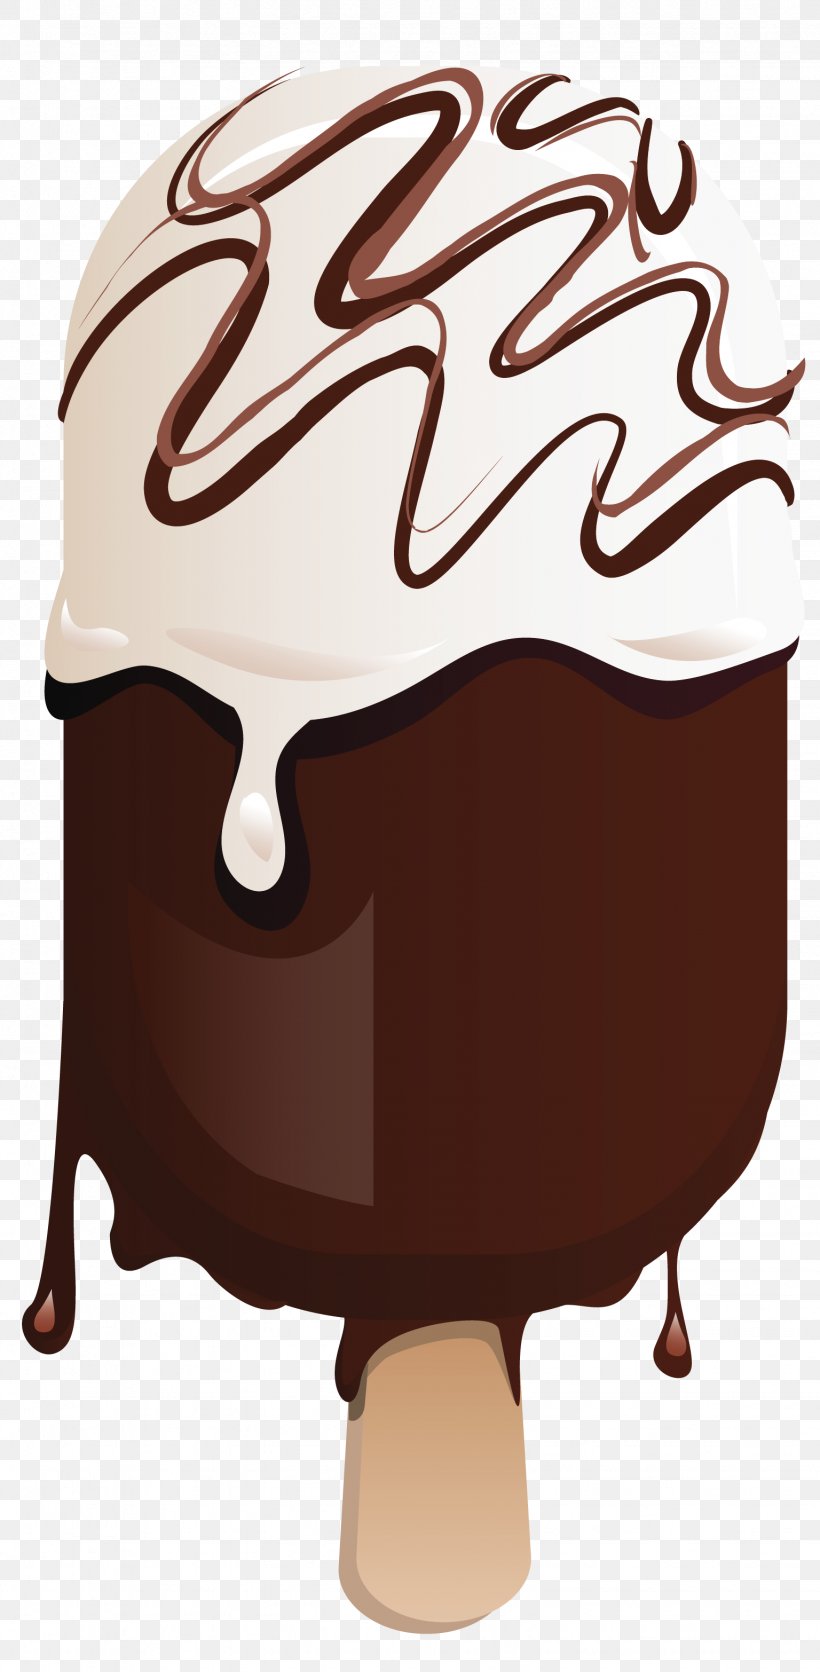 Ice Cream Cone Chocolate Ice Cream Sundae, PNG, 1536x3132px, Ice Cream, Cherry Ice Cream, Chocolate, Chocolate Cake, Chocolate Ice Cream Download Free